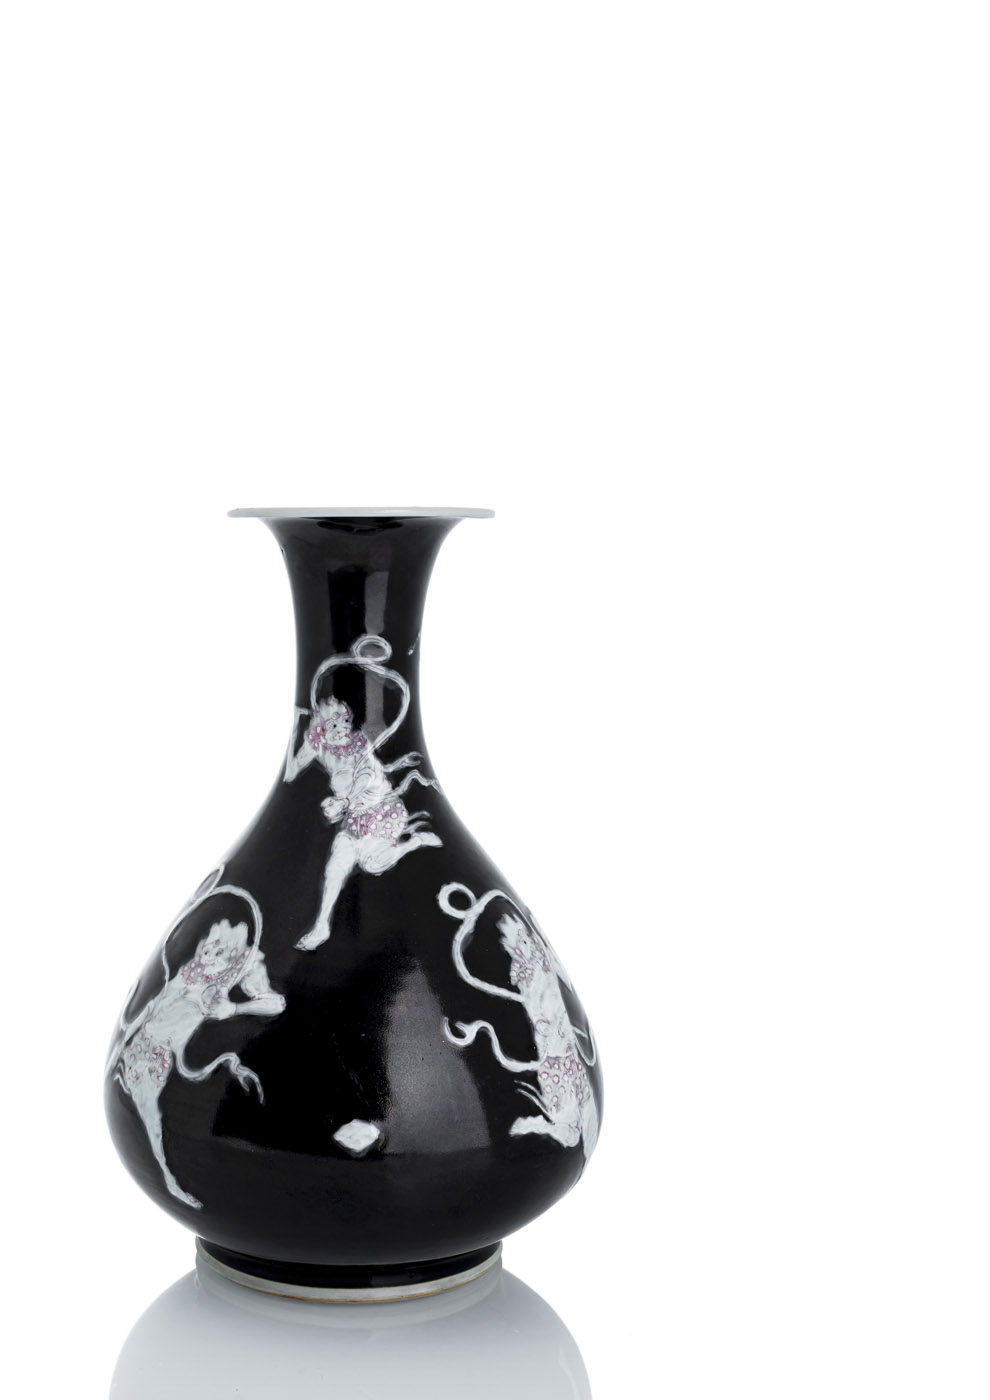 <b>Seltene Vase mit Dekor von Donnergöttern 'Kui Xing' auf schwarzem Fond</b>